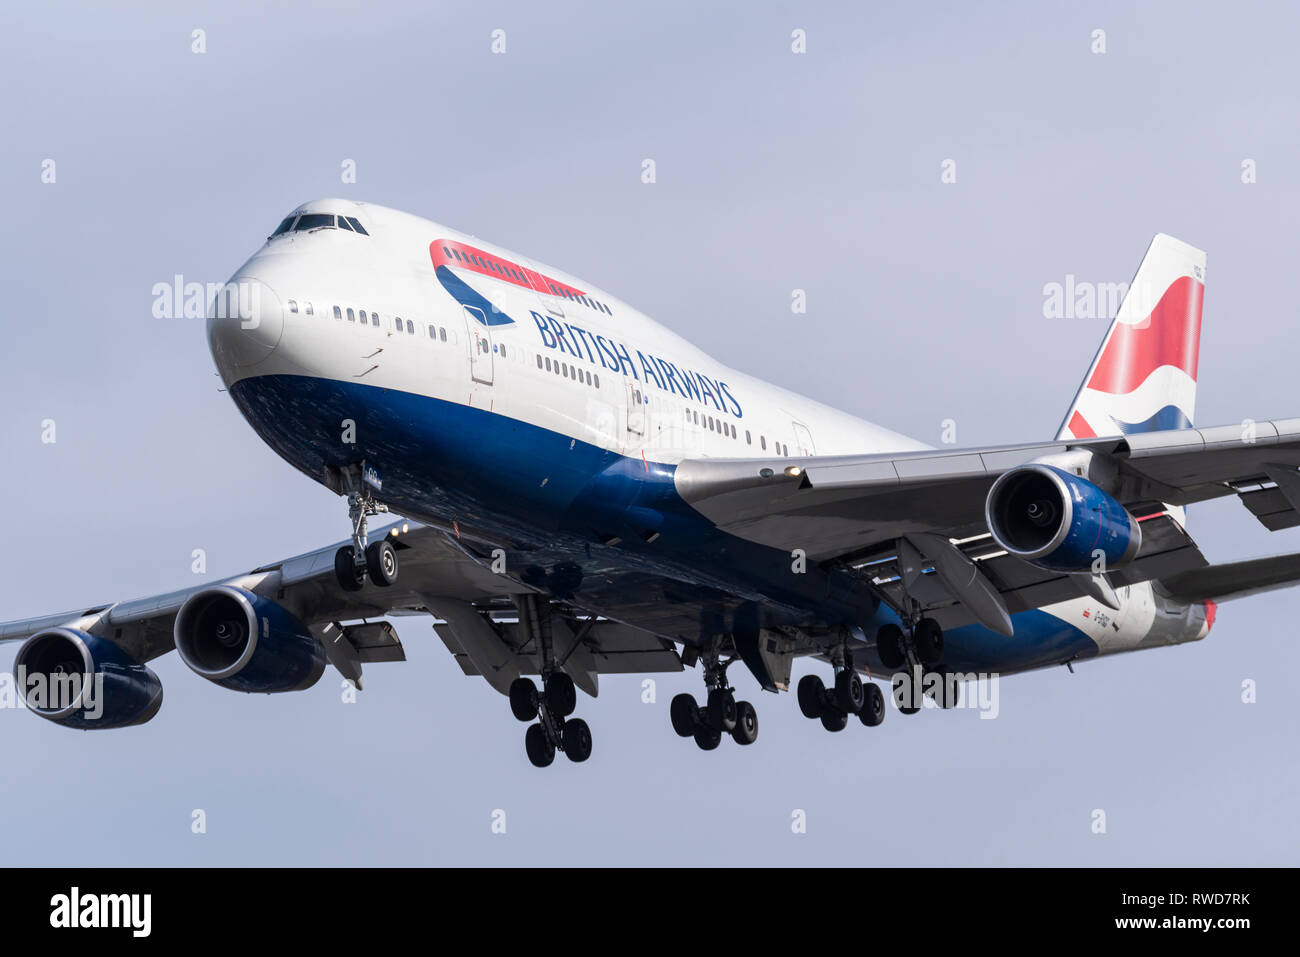 British Airways Boeing 747 Jumbo Jet Jet Flugzeug Flugzeug G-BYGG landet am London Heathrow Airport, Großbritannien Stockfoto